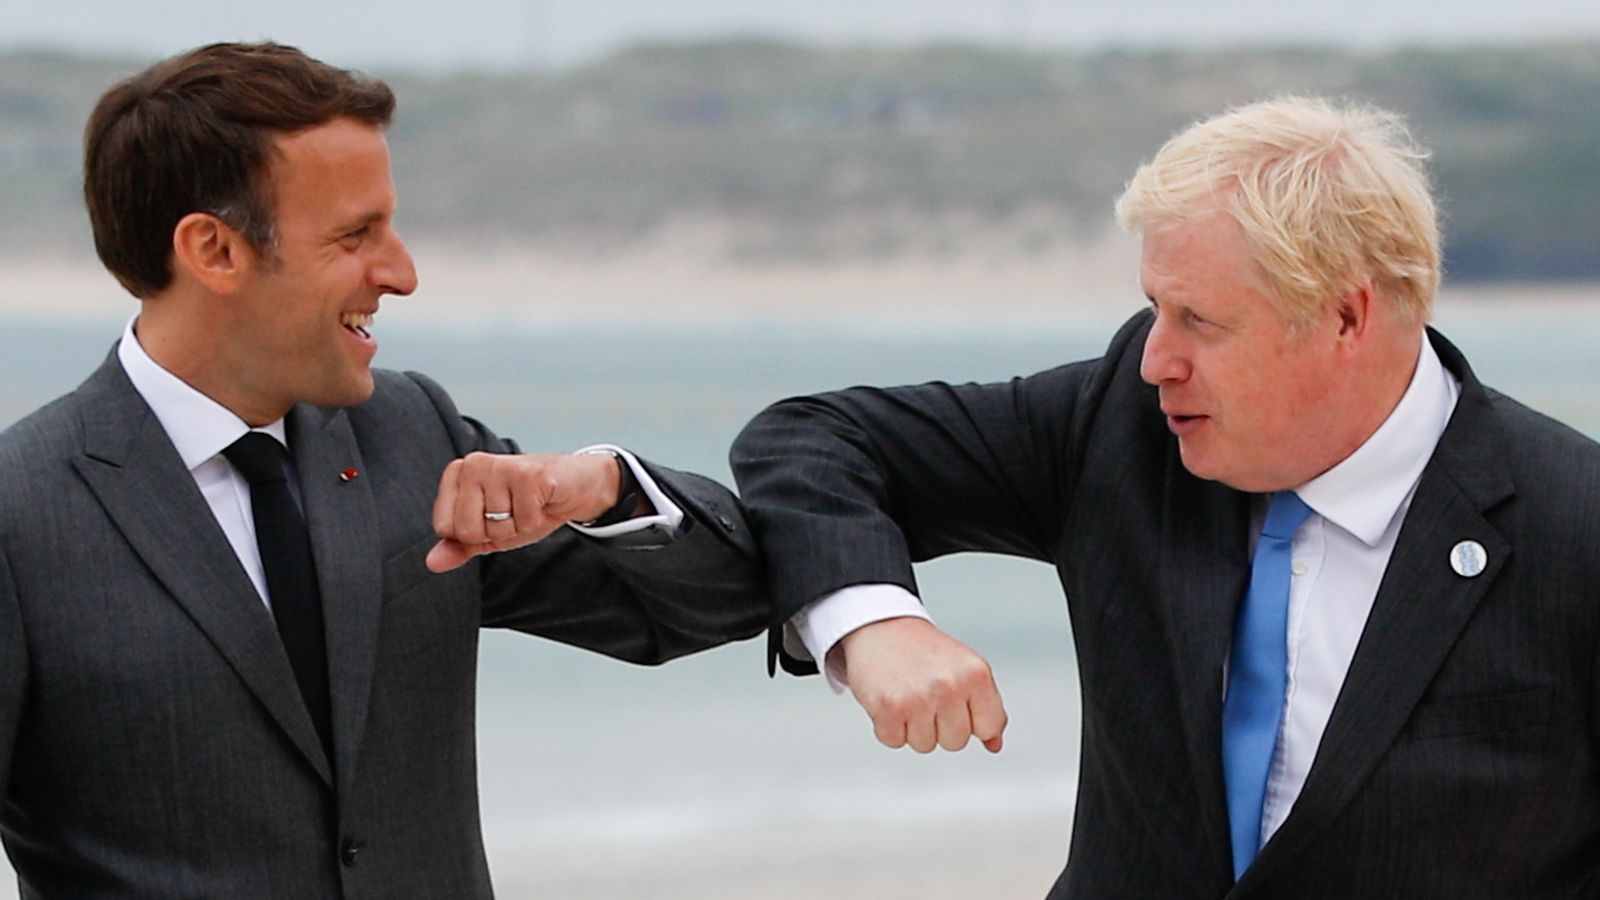 Boris Johnson: UK has ‘indestructible’ relationship with France